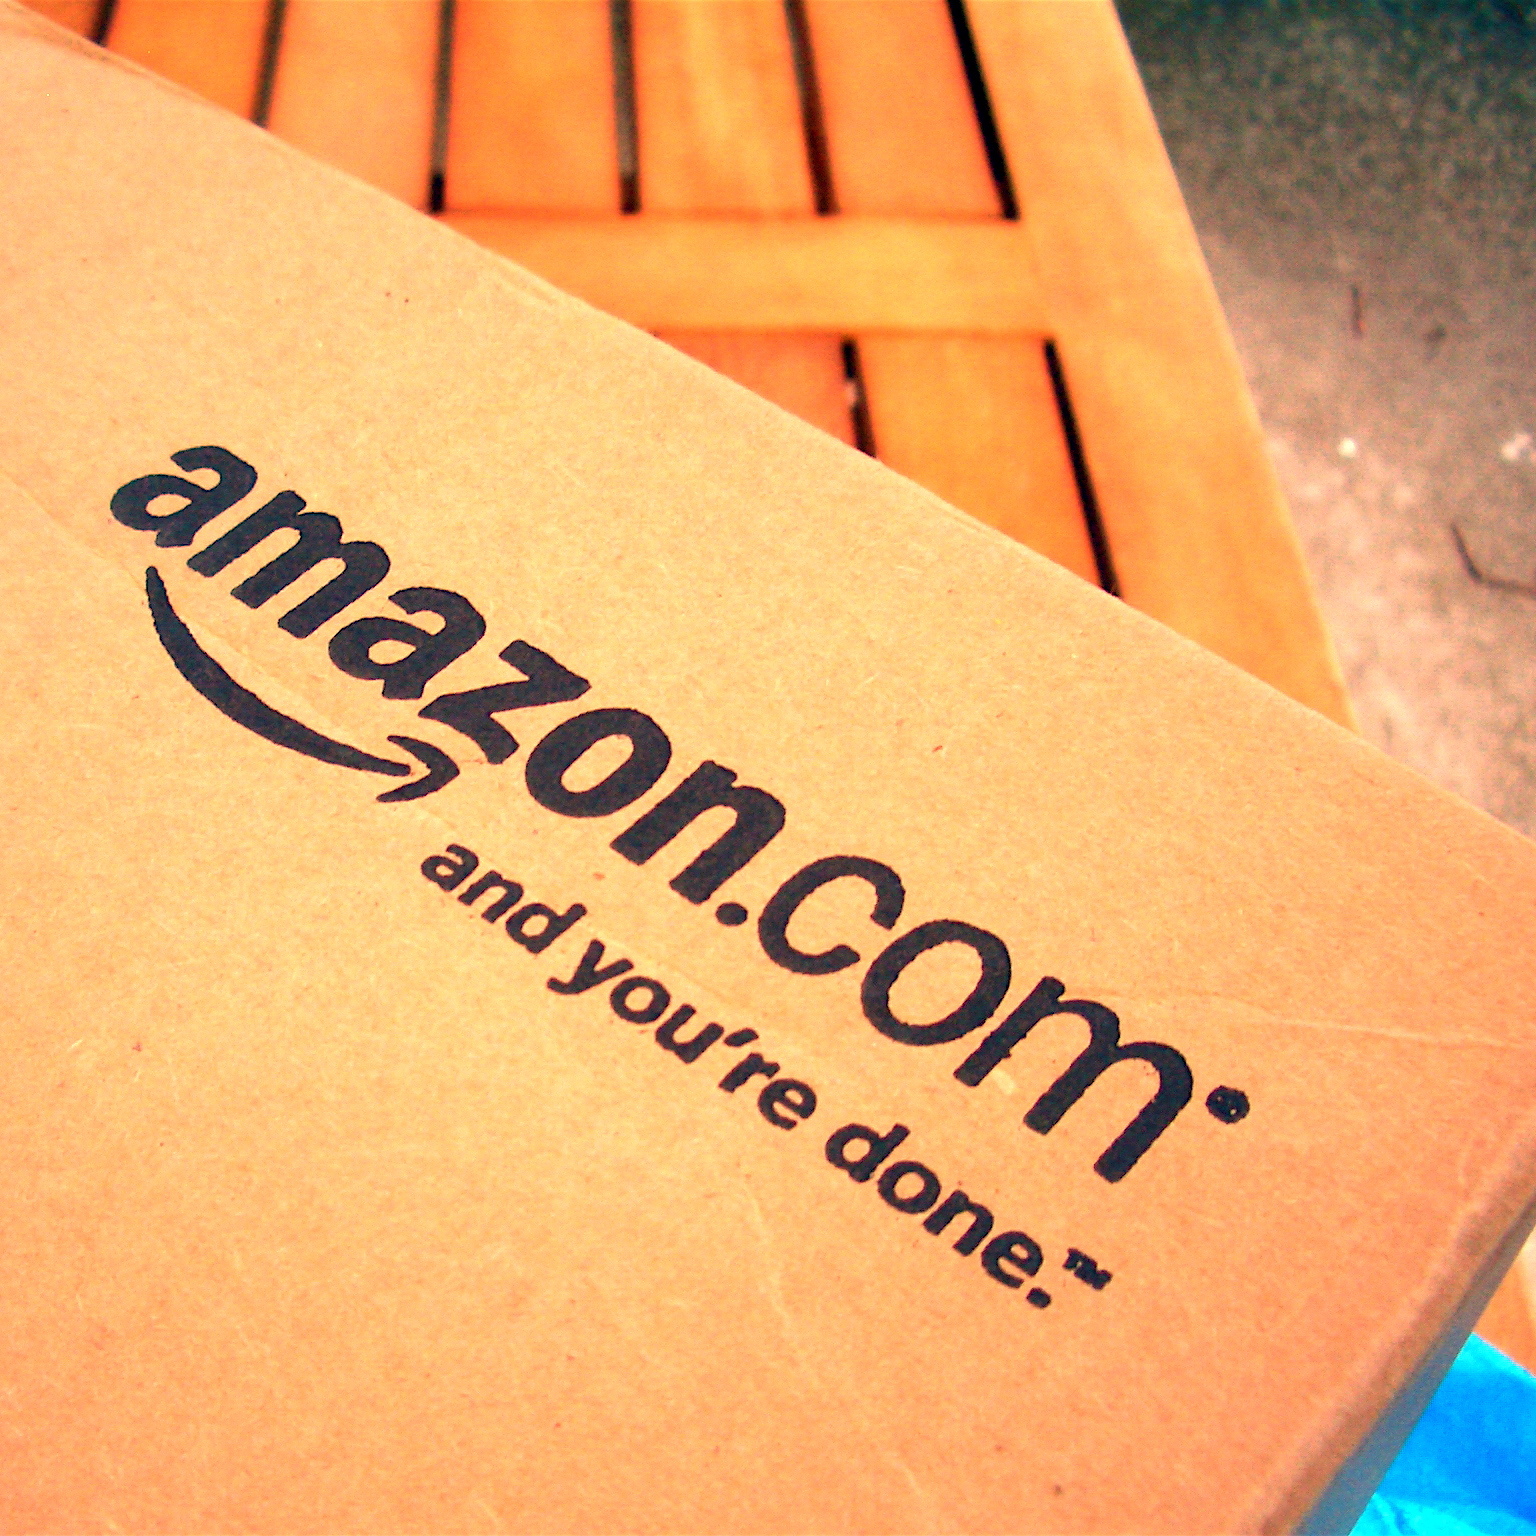 Как будет развиваться крупнейший интернет-ритейлер Amazon